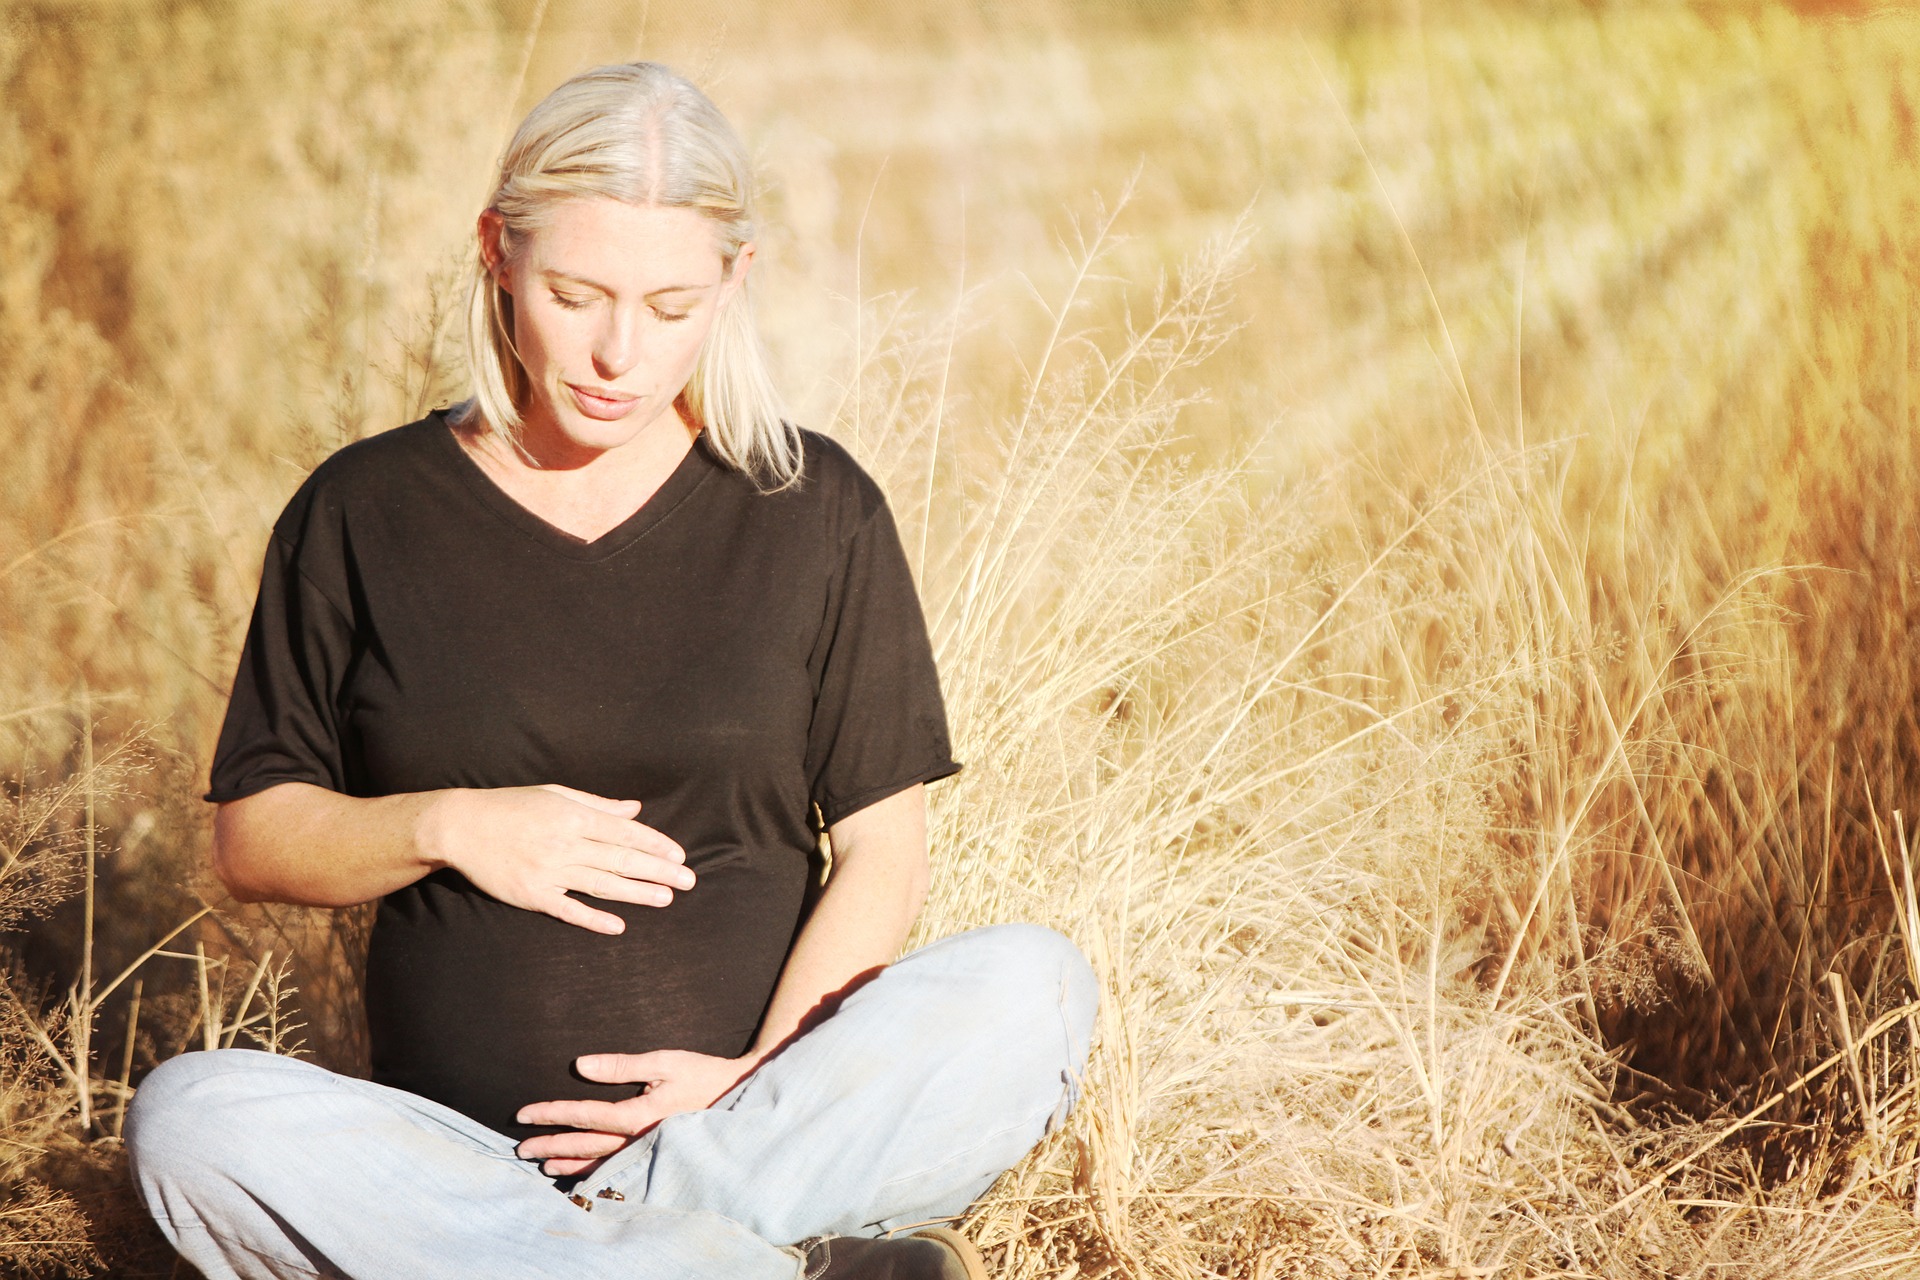 3 مخاطر للتشميس أثناء الحمل: انتبهي منها!